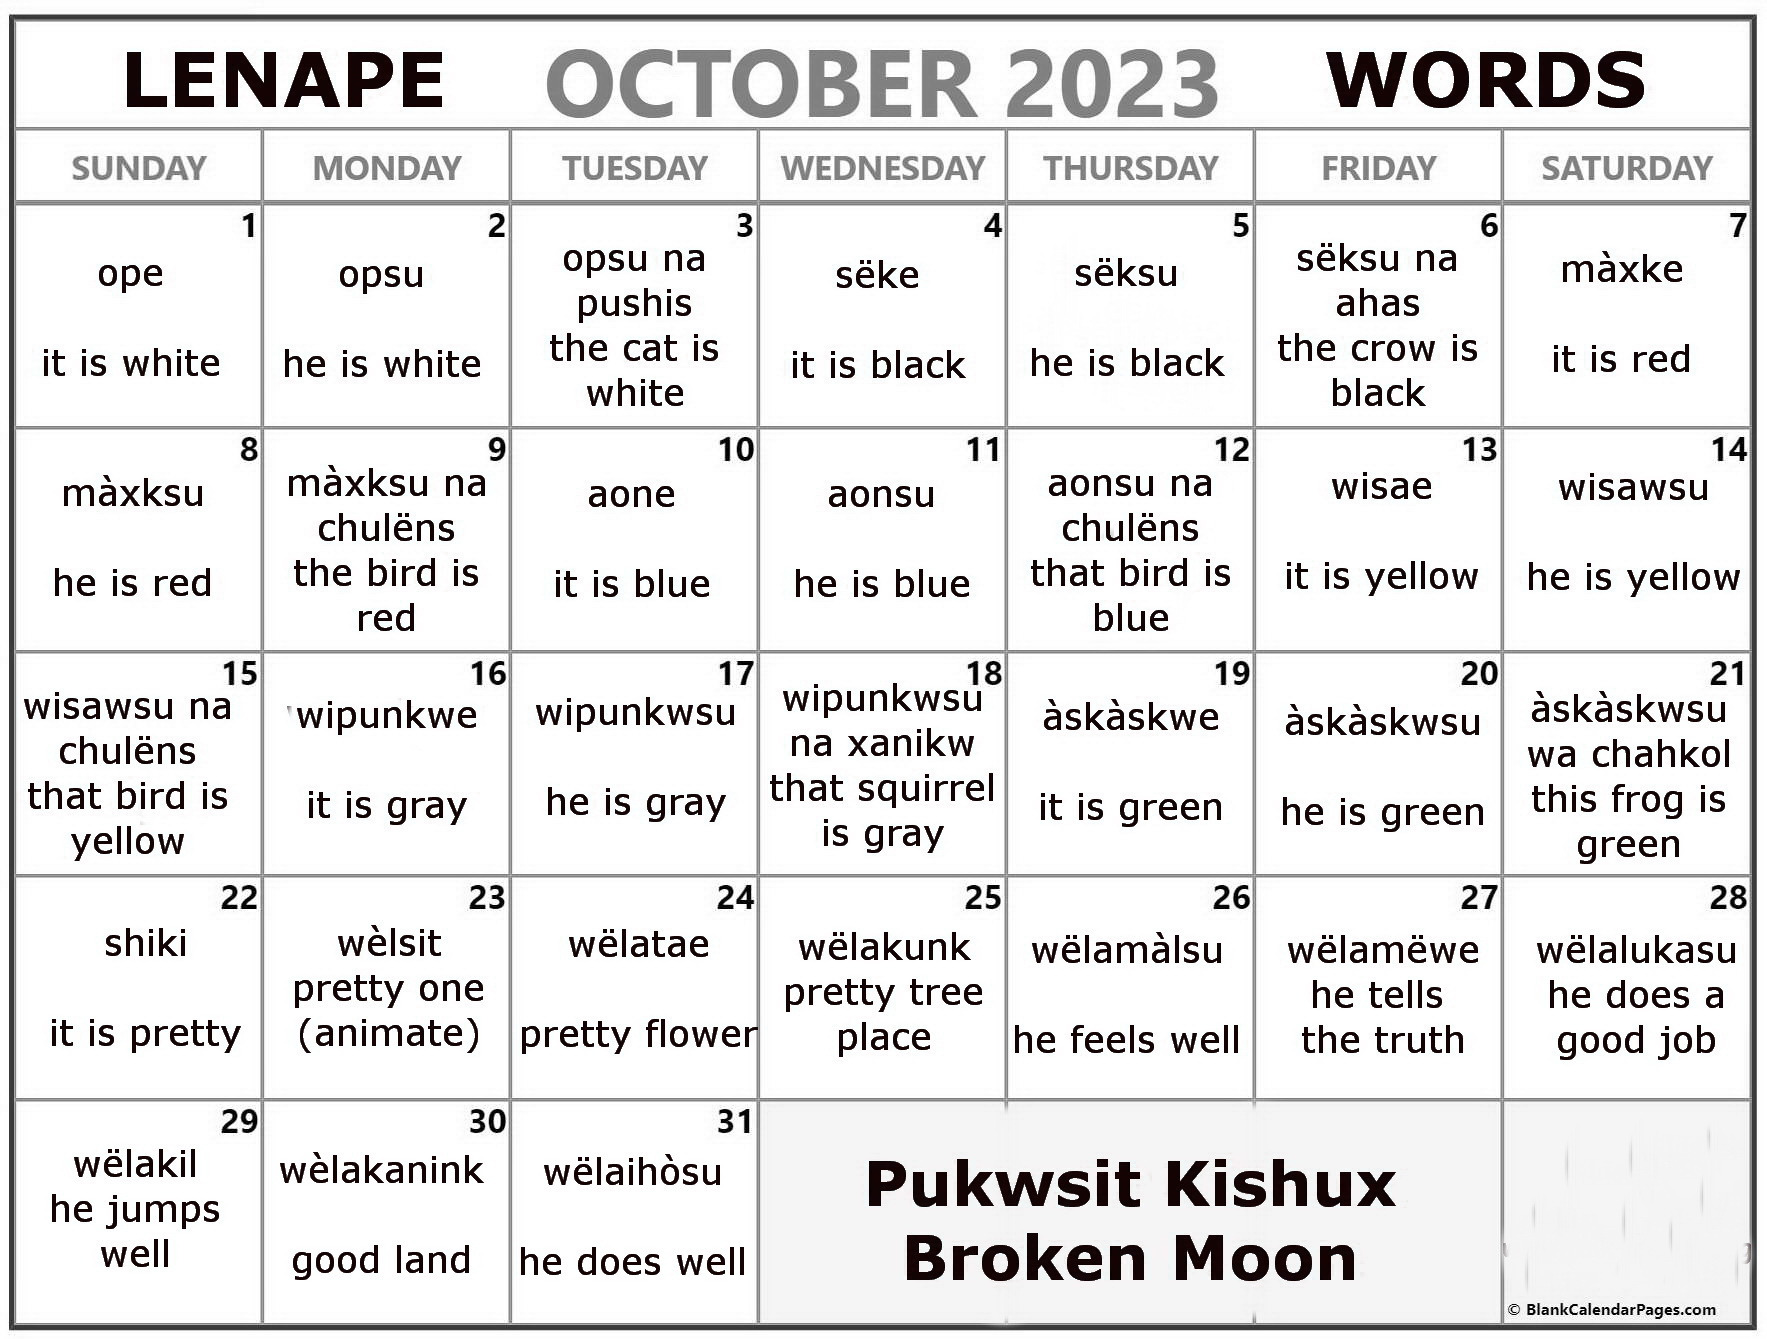 October 2023 Lenape Word-a-Day Calendar